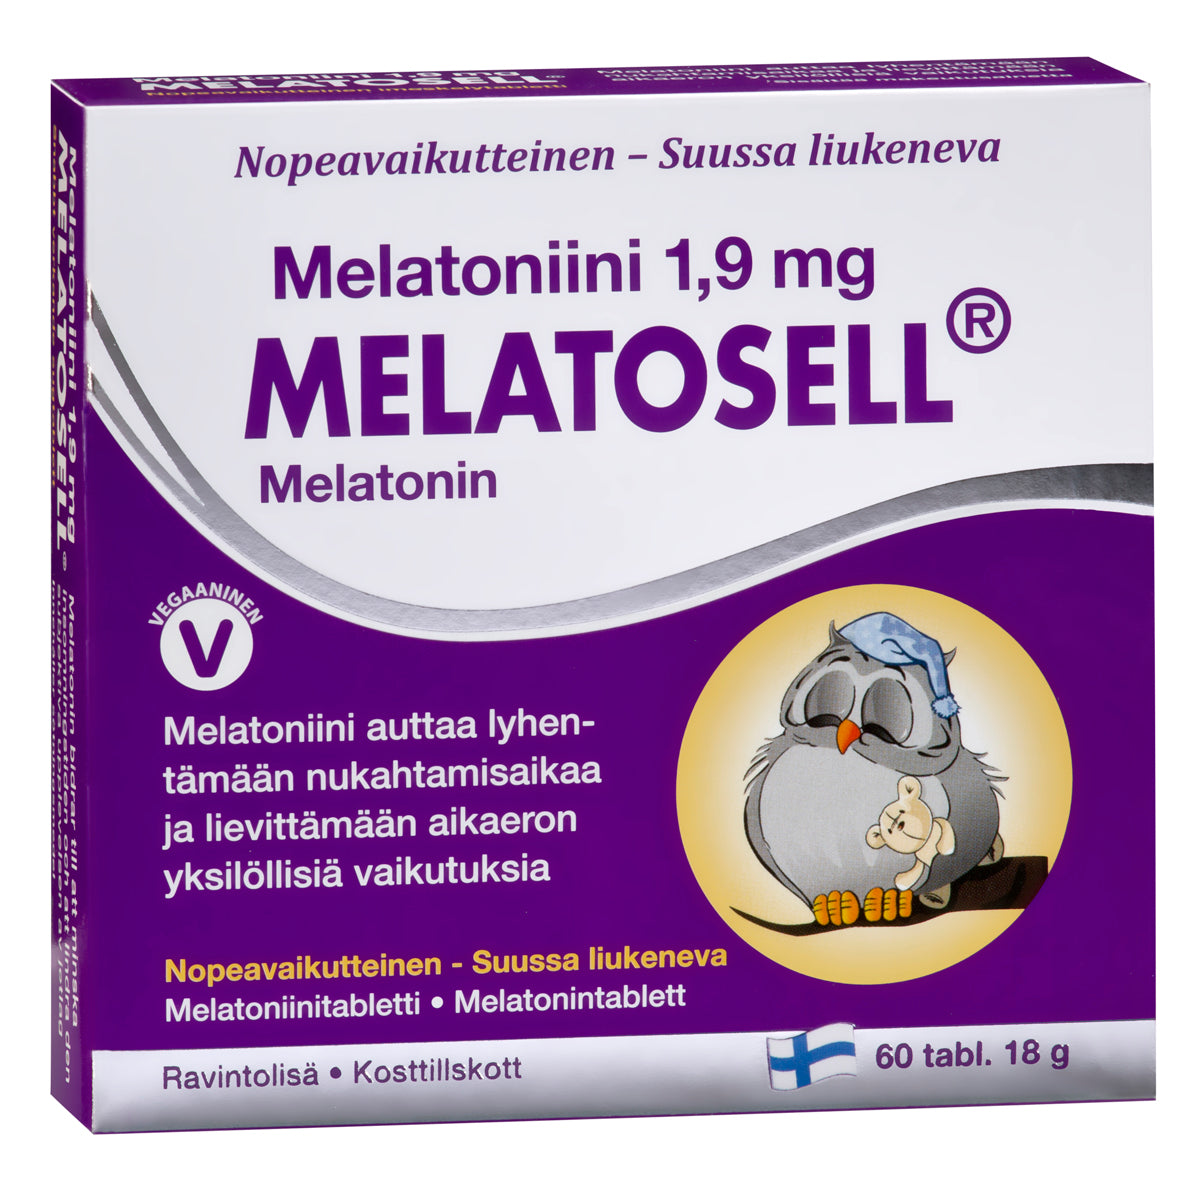 Melatosell - Melatoniini 1,9 mg 60 tabl.